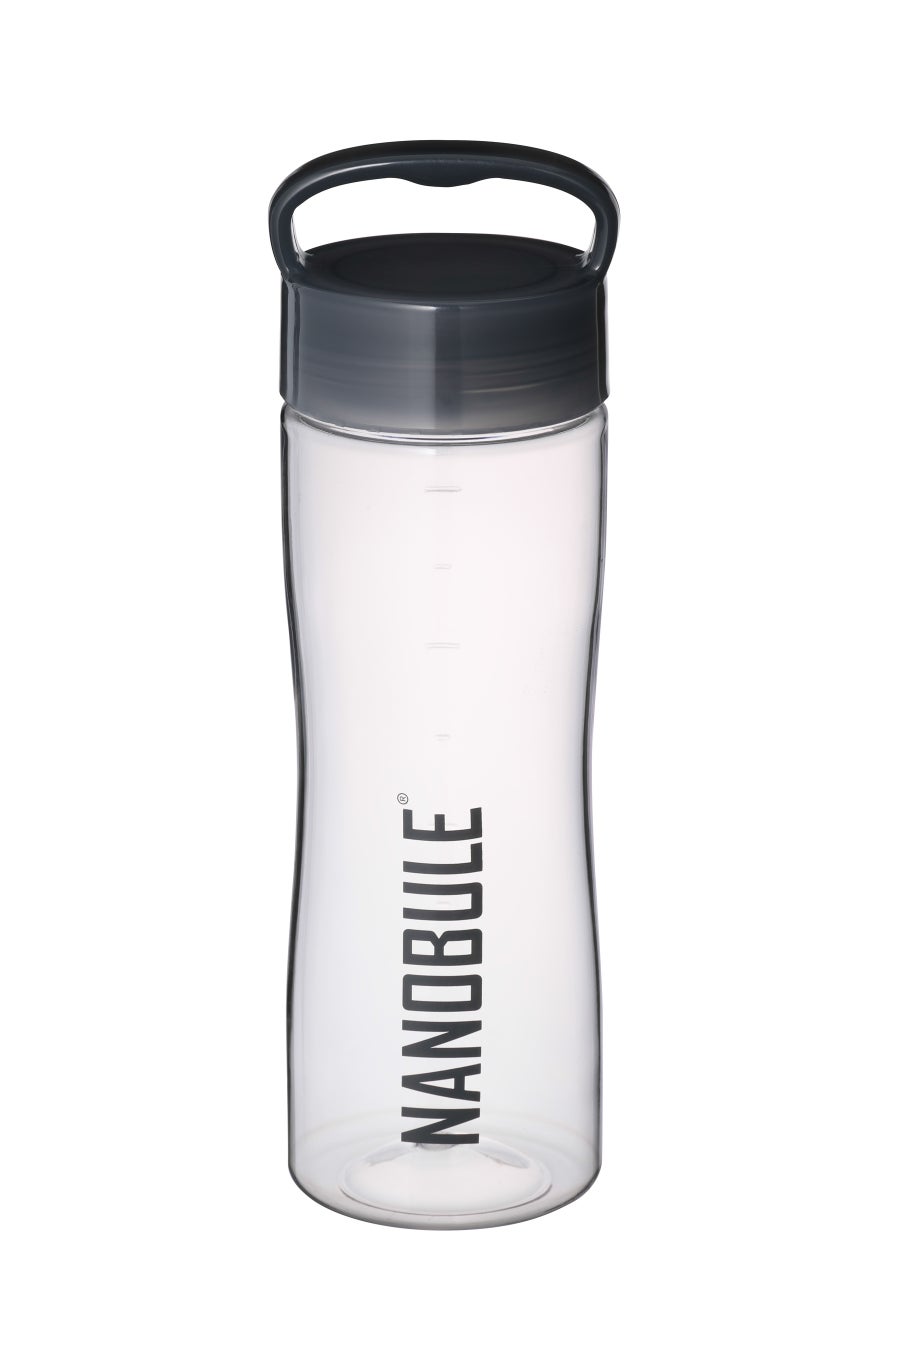 振るだけでナノバブルが発生するウォーターボトル　　　　　　　　　　　　　　　　　　　　　　　「NANOBULE シェイキングボトル」新発売